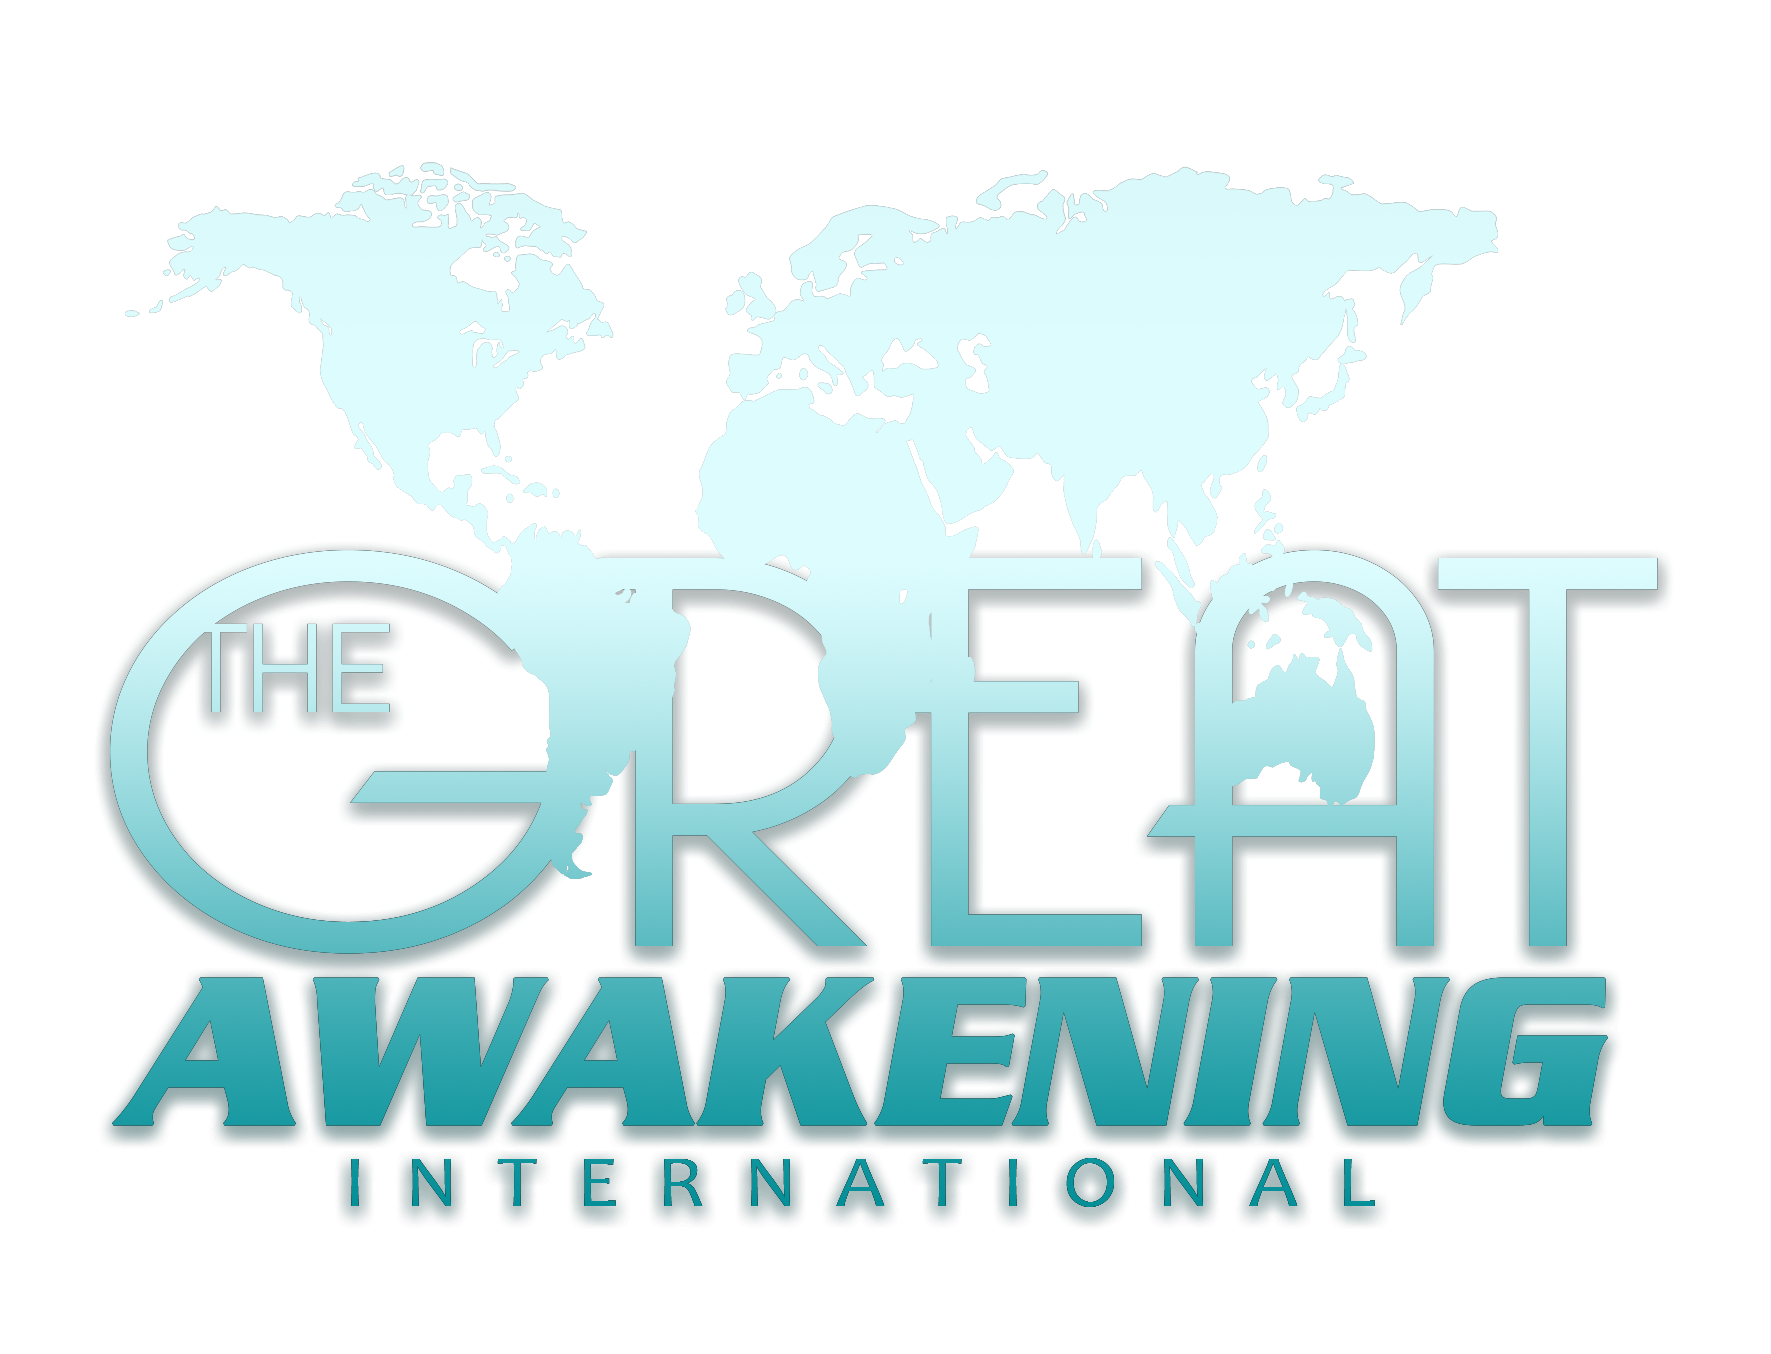 Great Awakening International